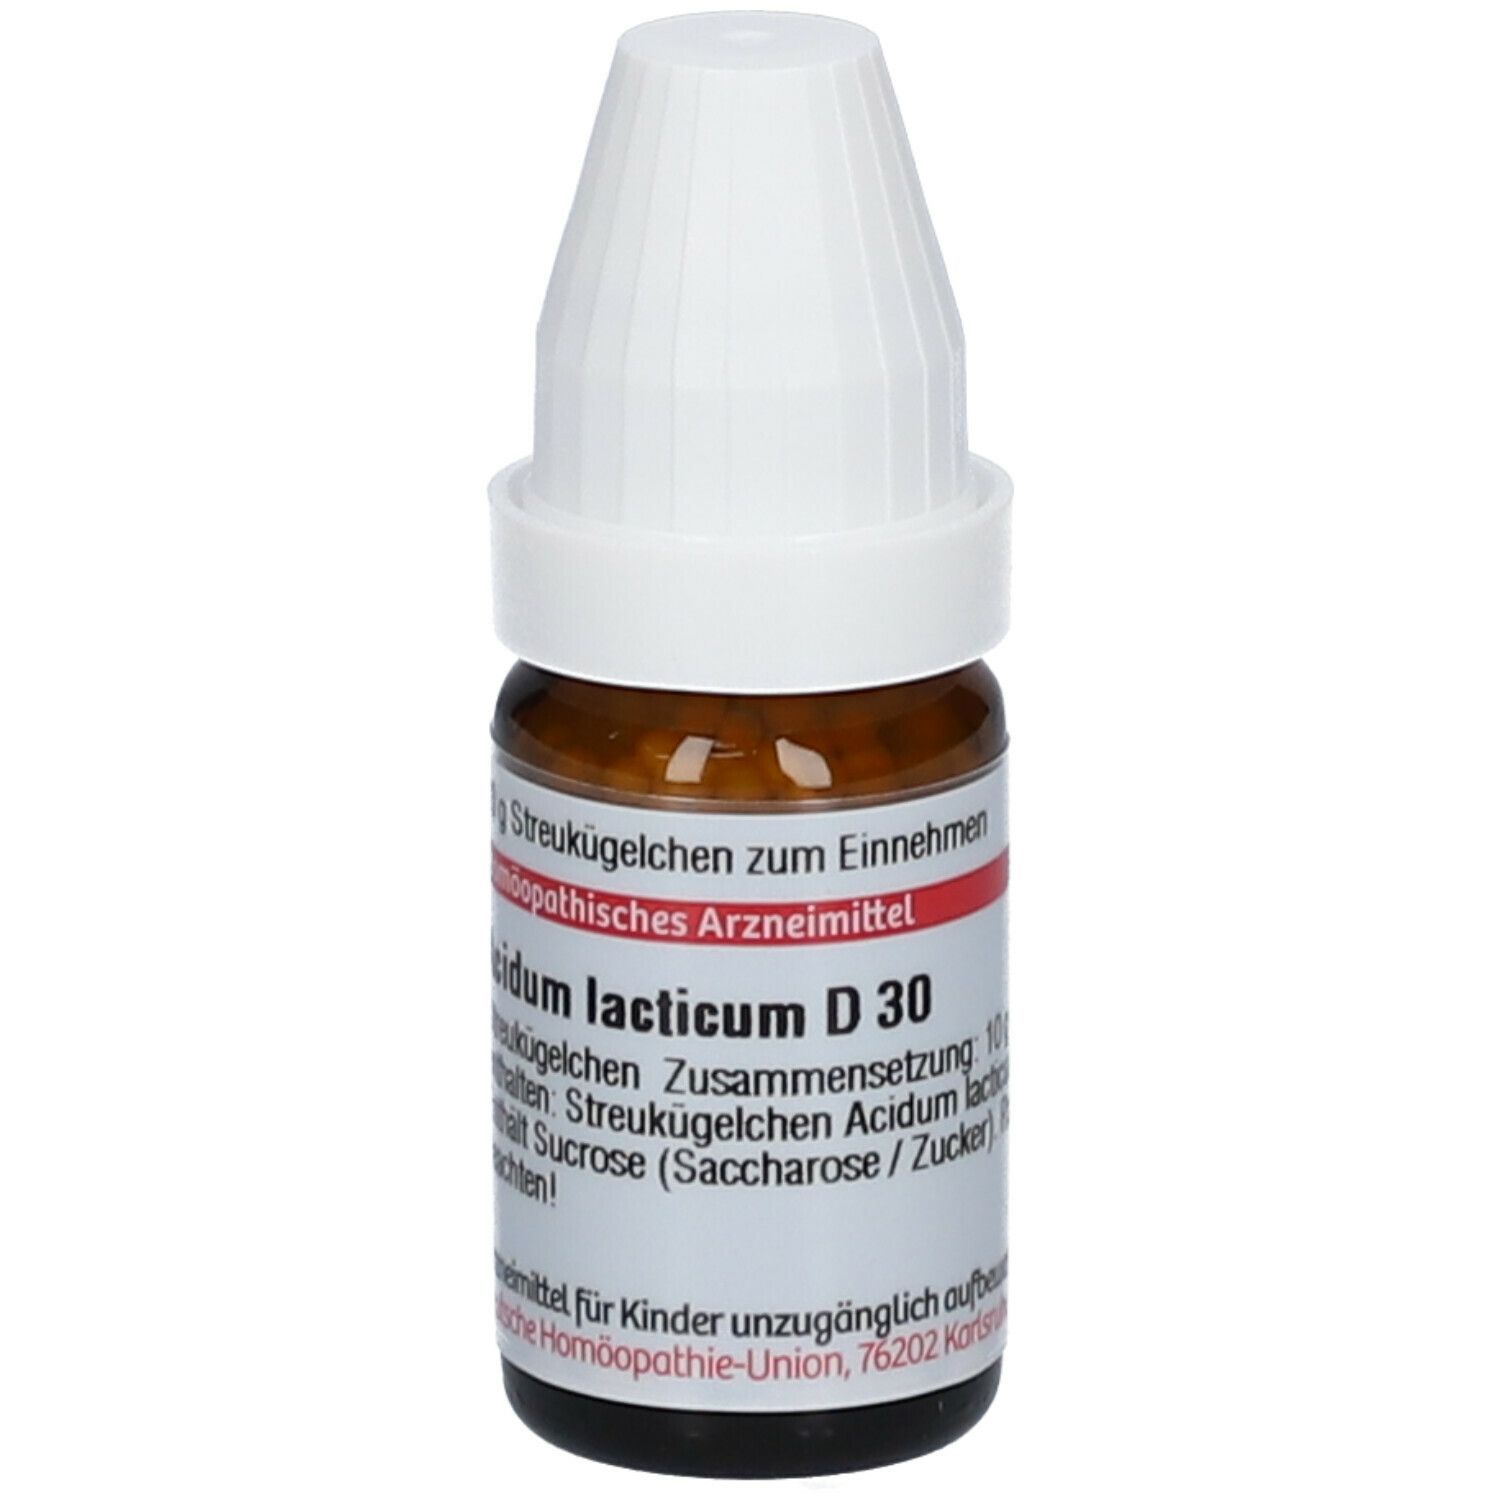 DHU Acidum Lacticum D30